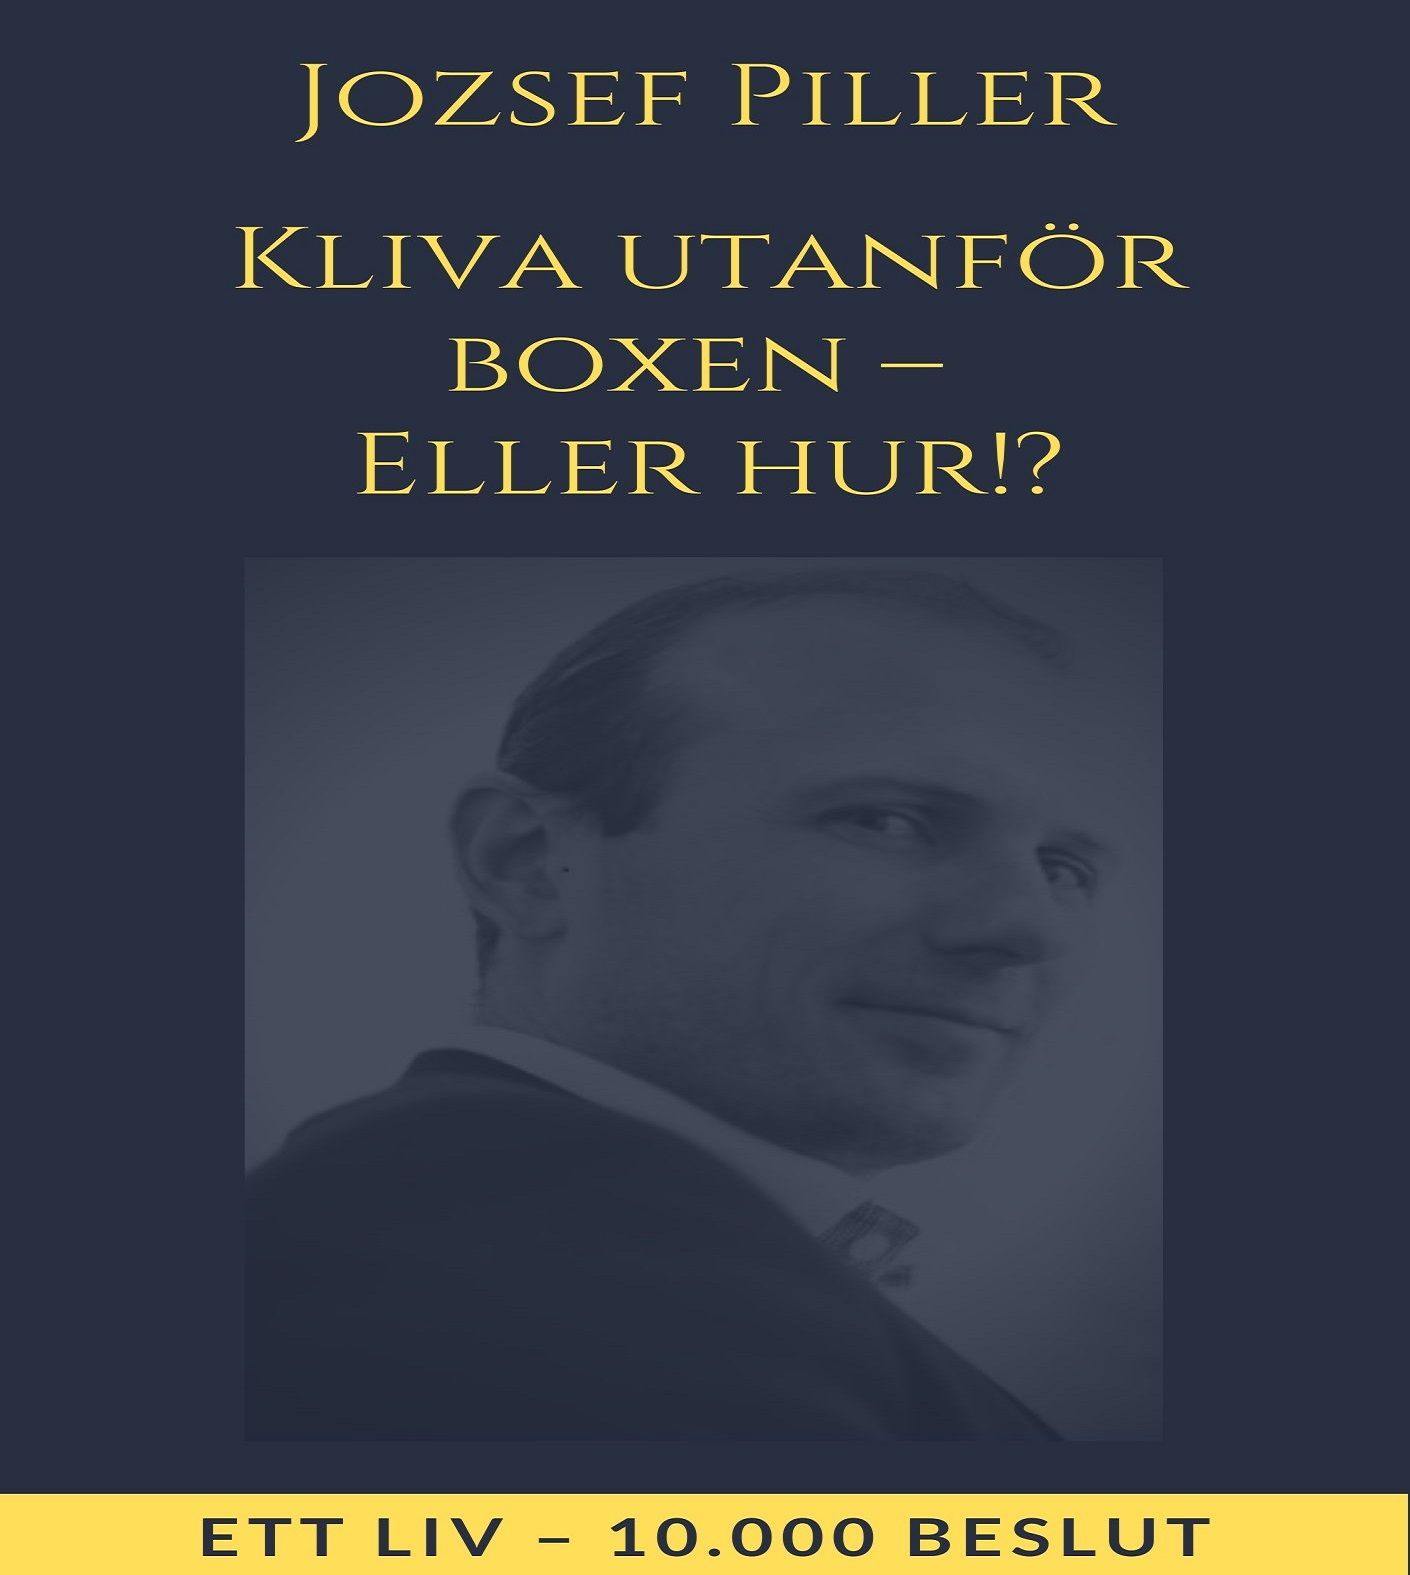 Kliva utanför boxen – Eller hur!?, audiobook by Jozsef Piller